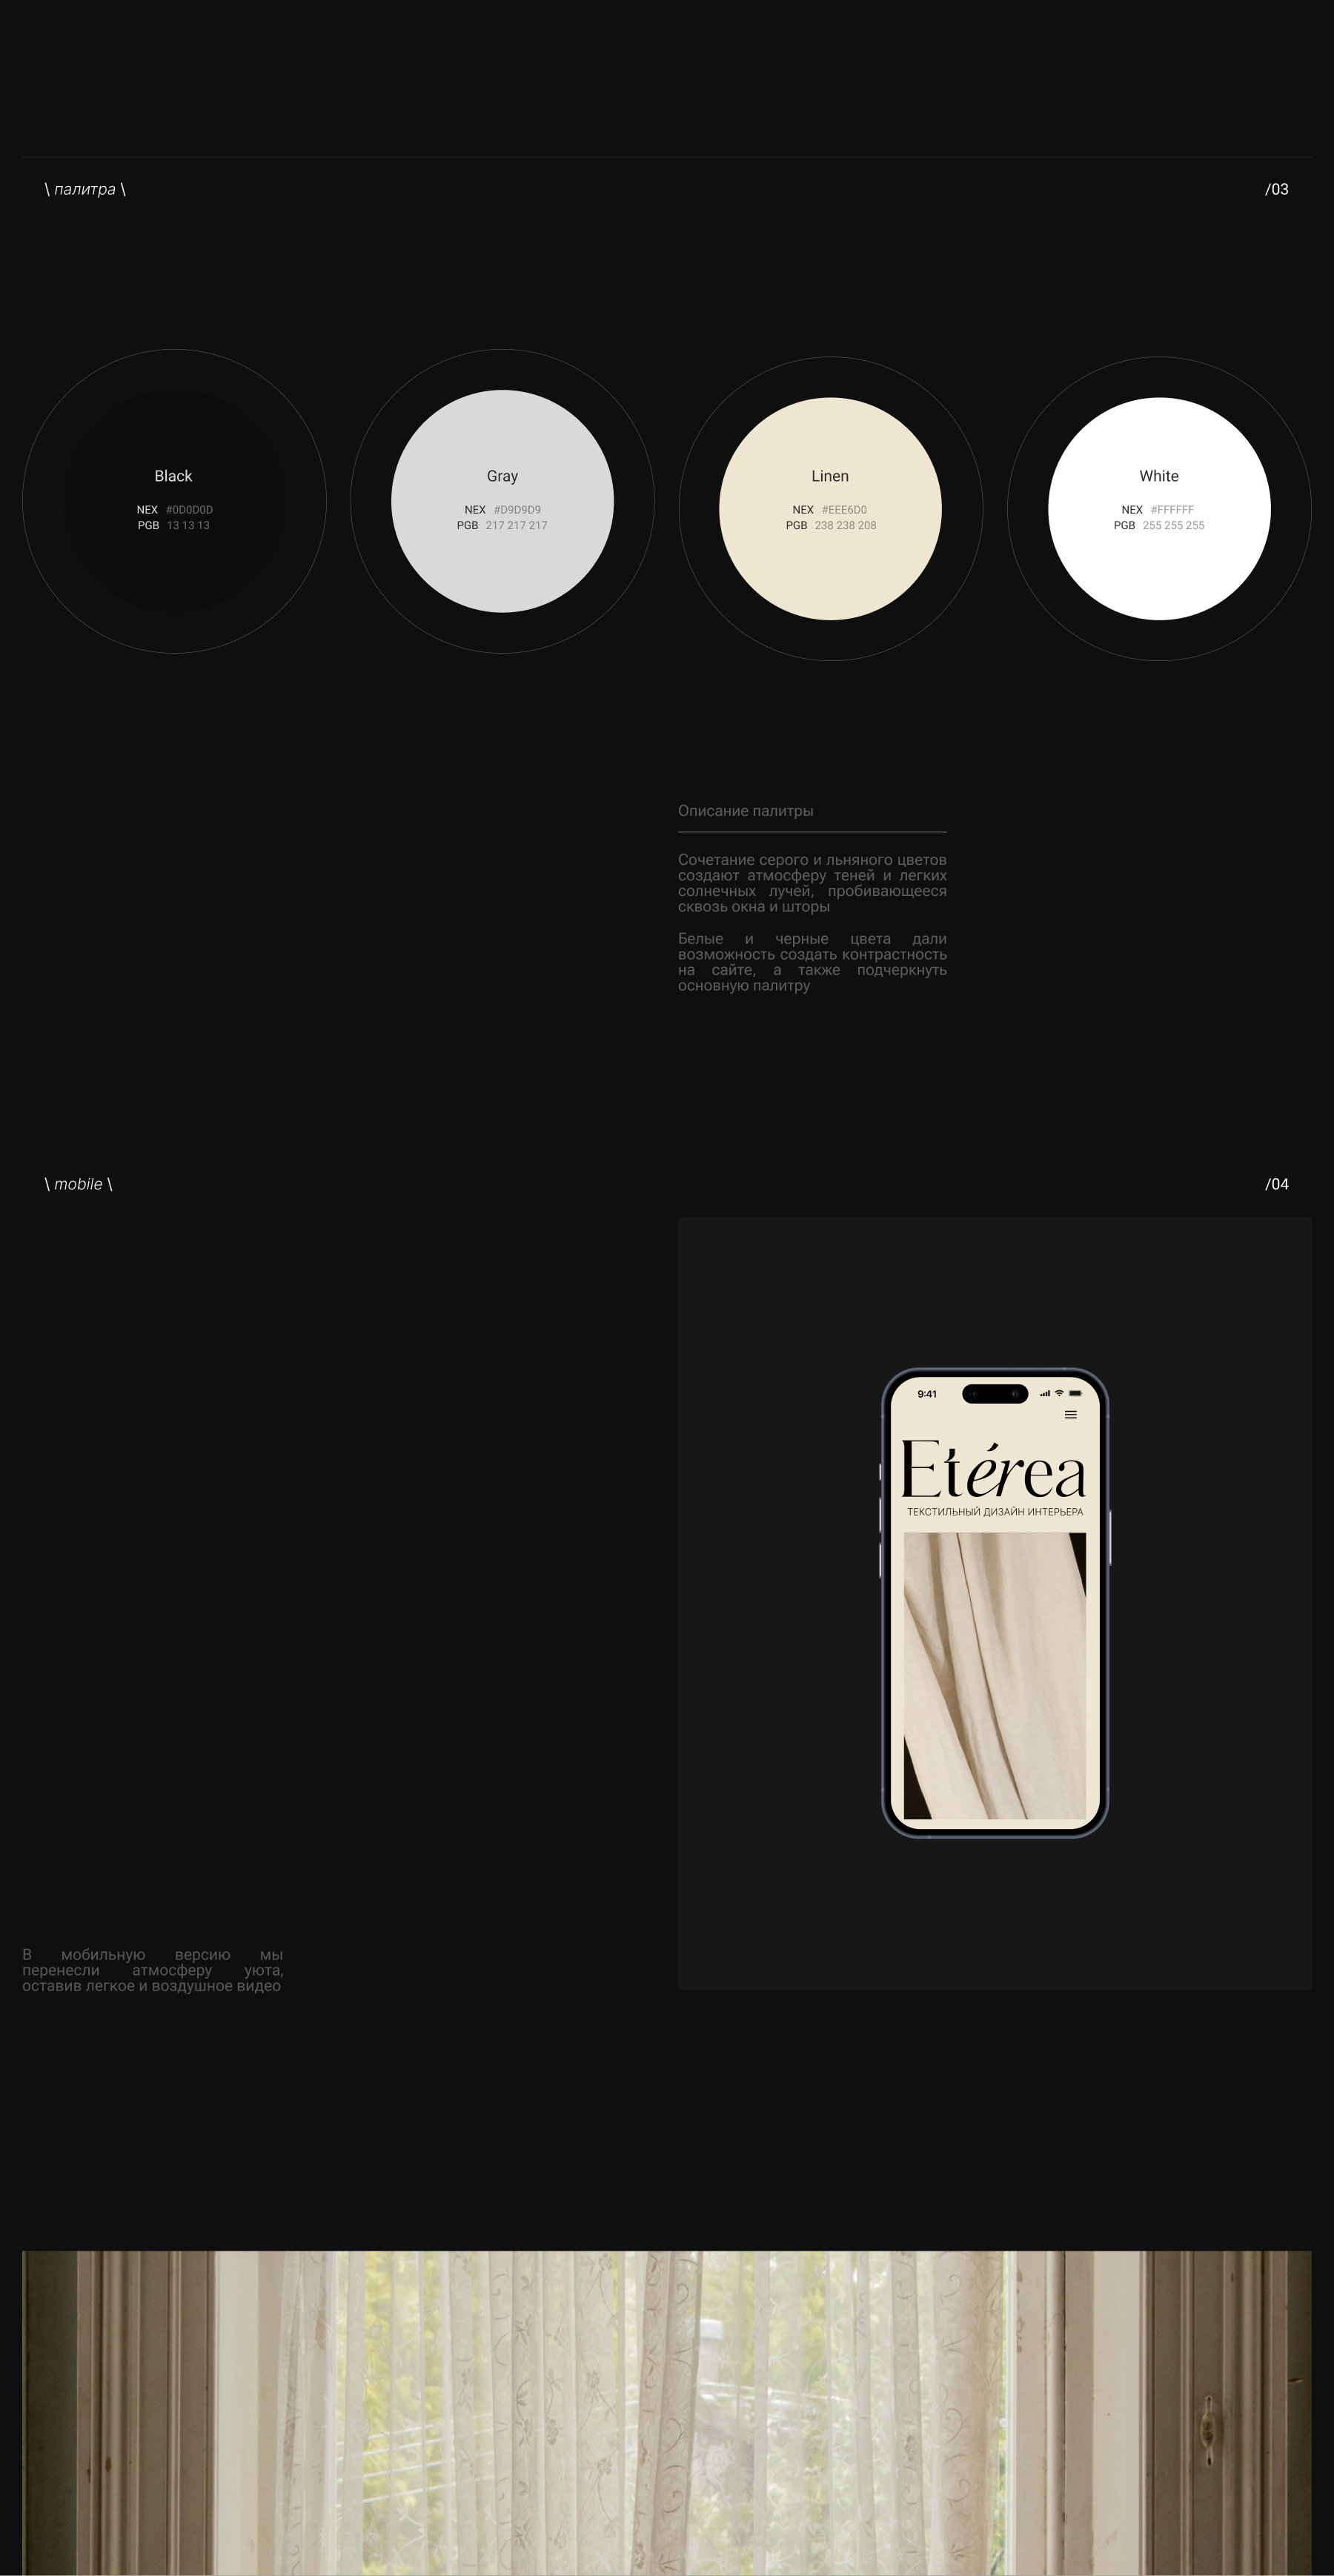 Eterea. Текстильный дизайн интерьера — Изображение №3 — Интерфейсы, Анимация на Dprofile